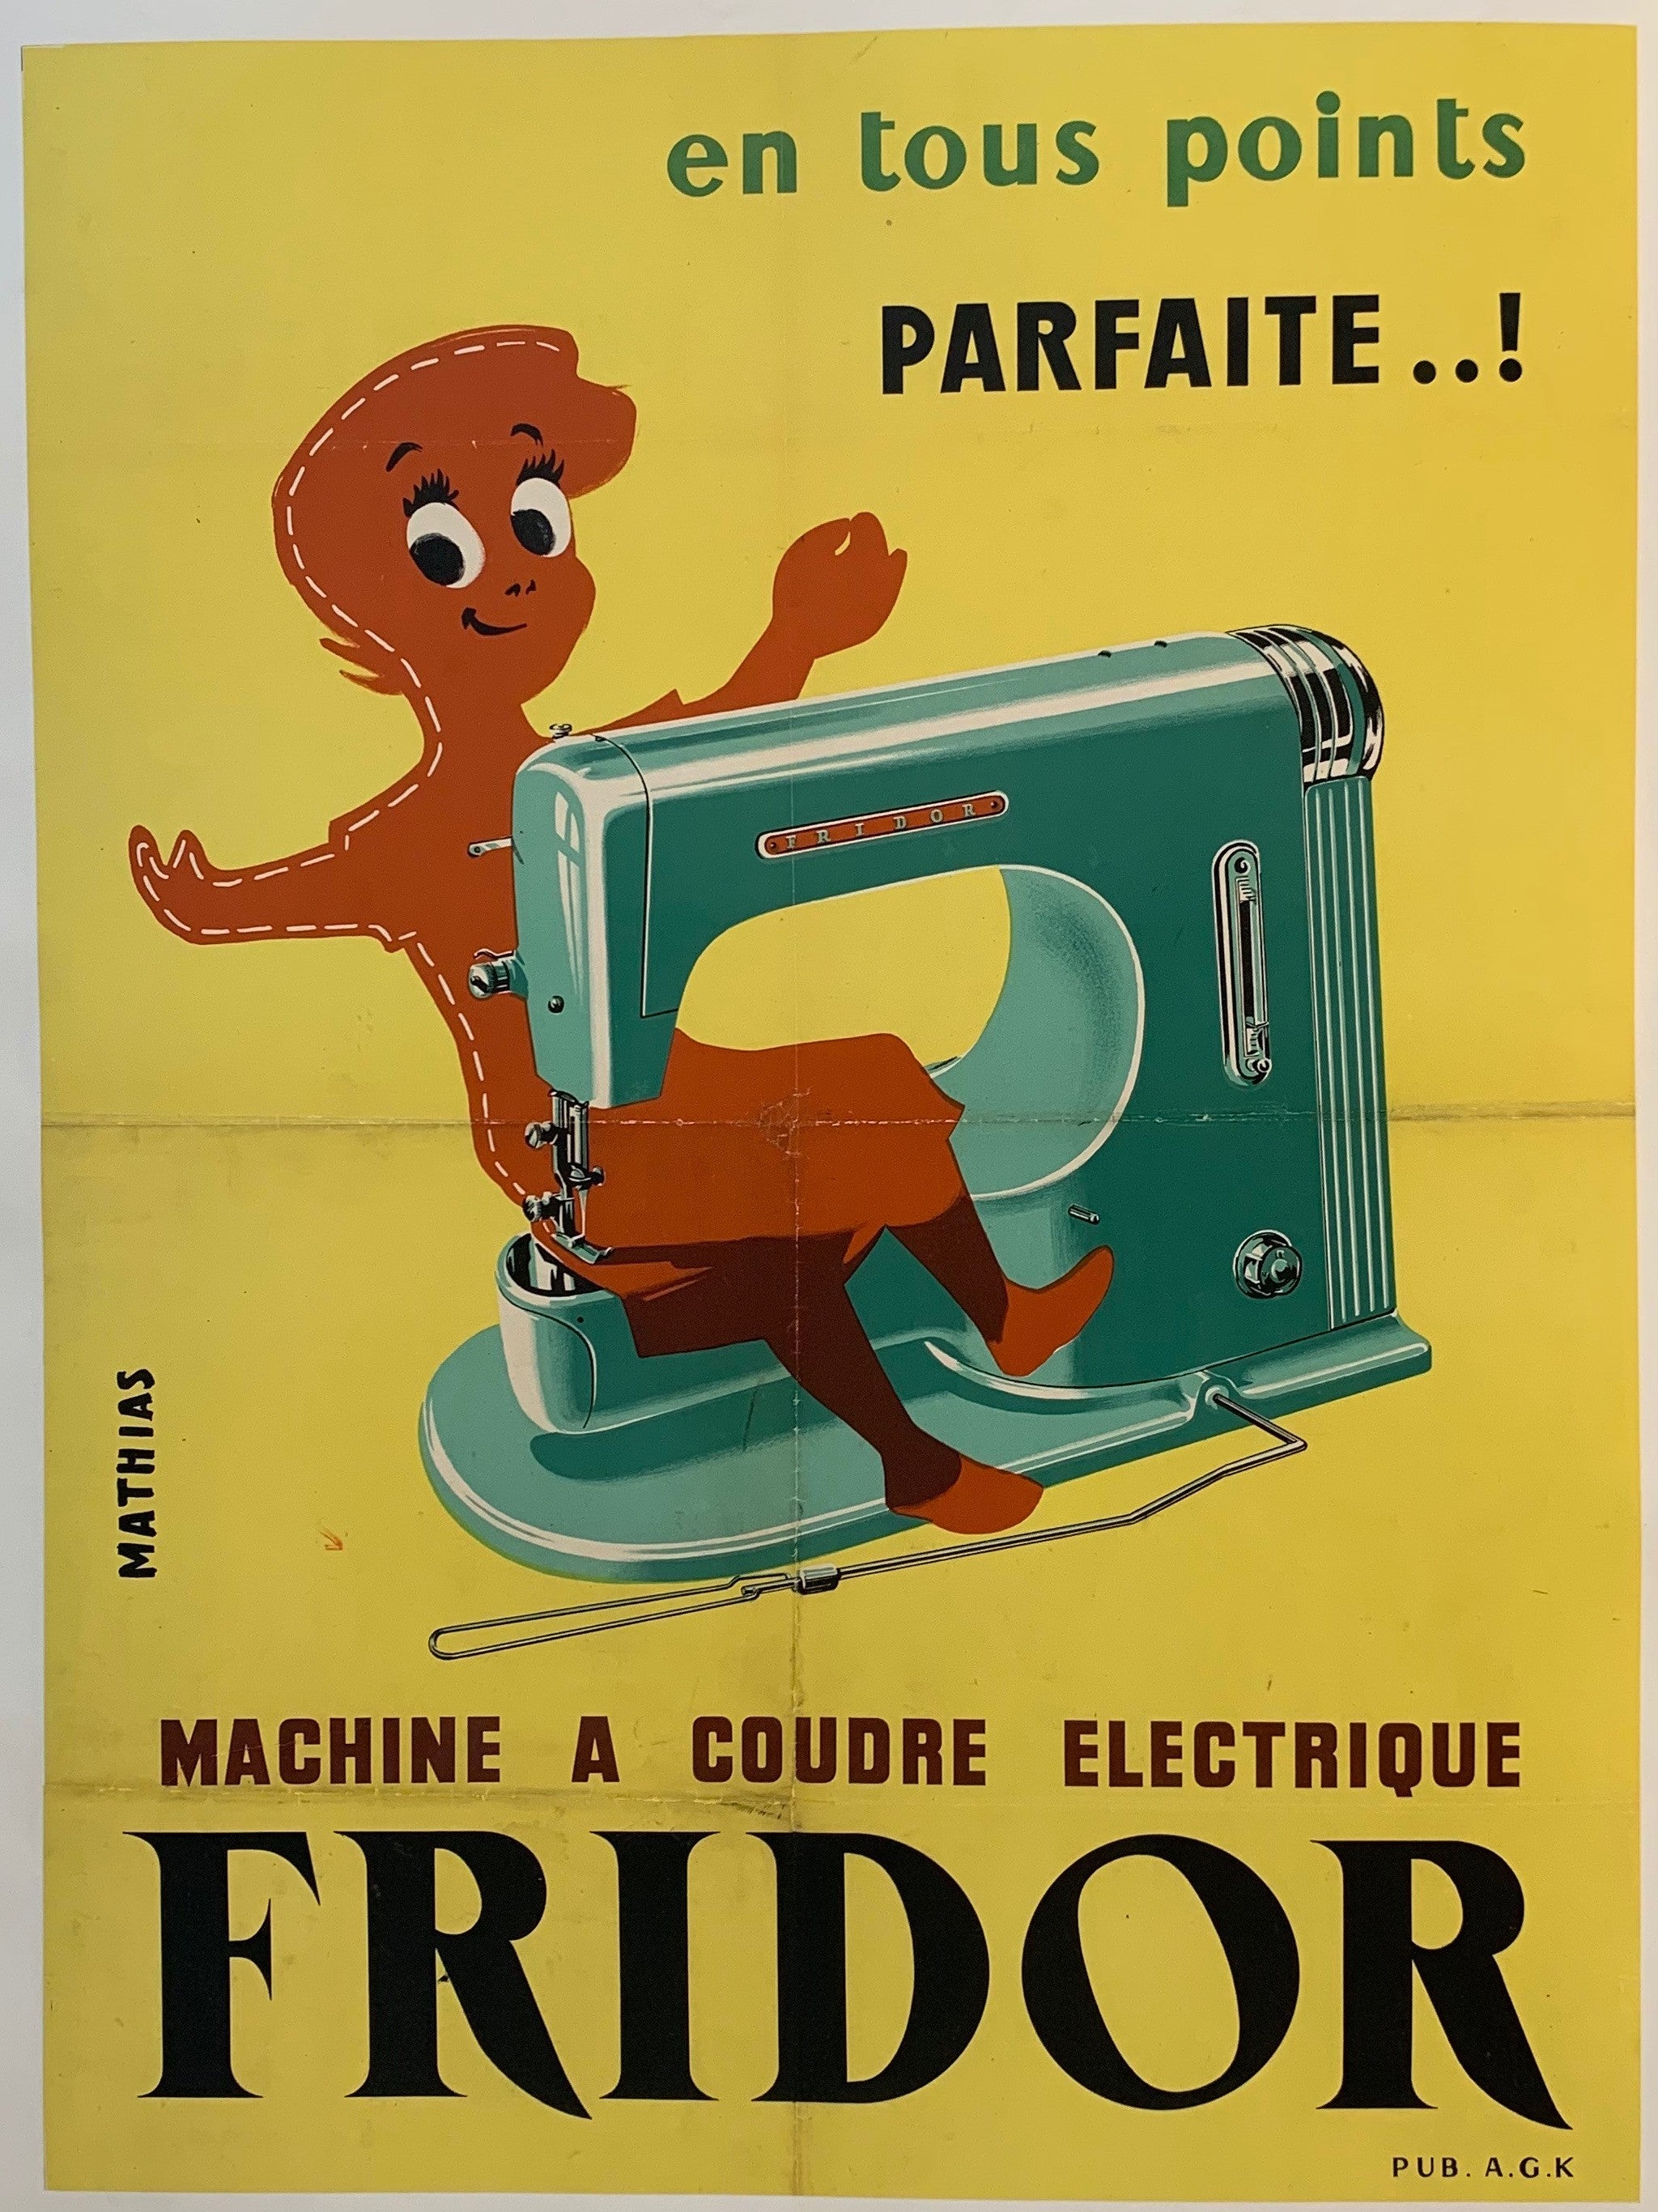 Machine a Coudre Electrique "Fridor"